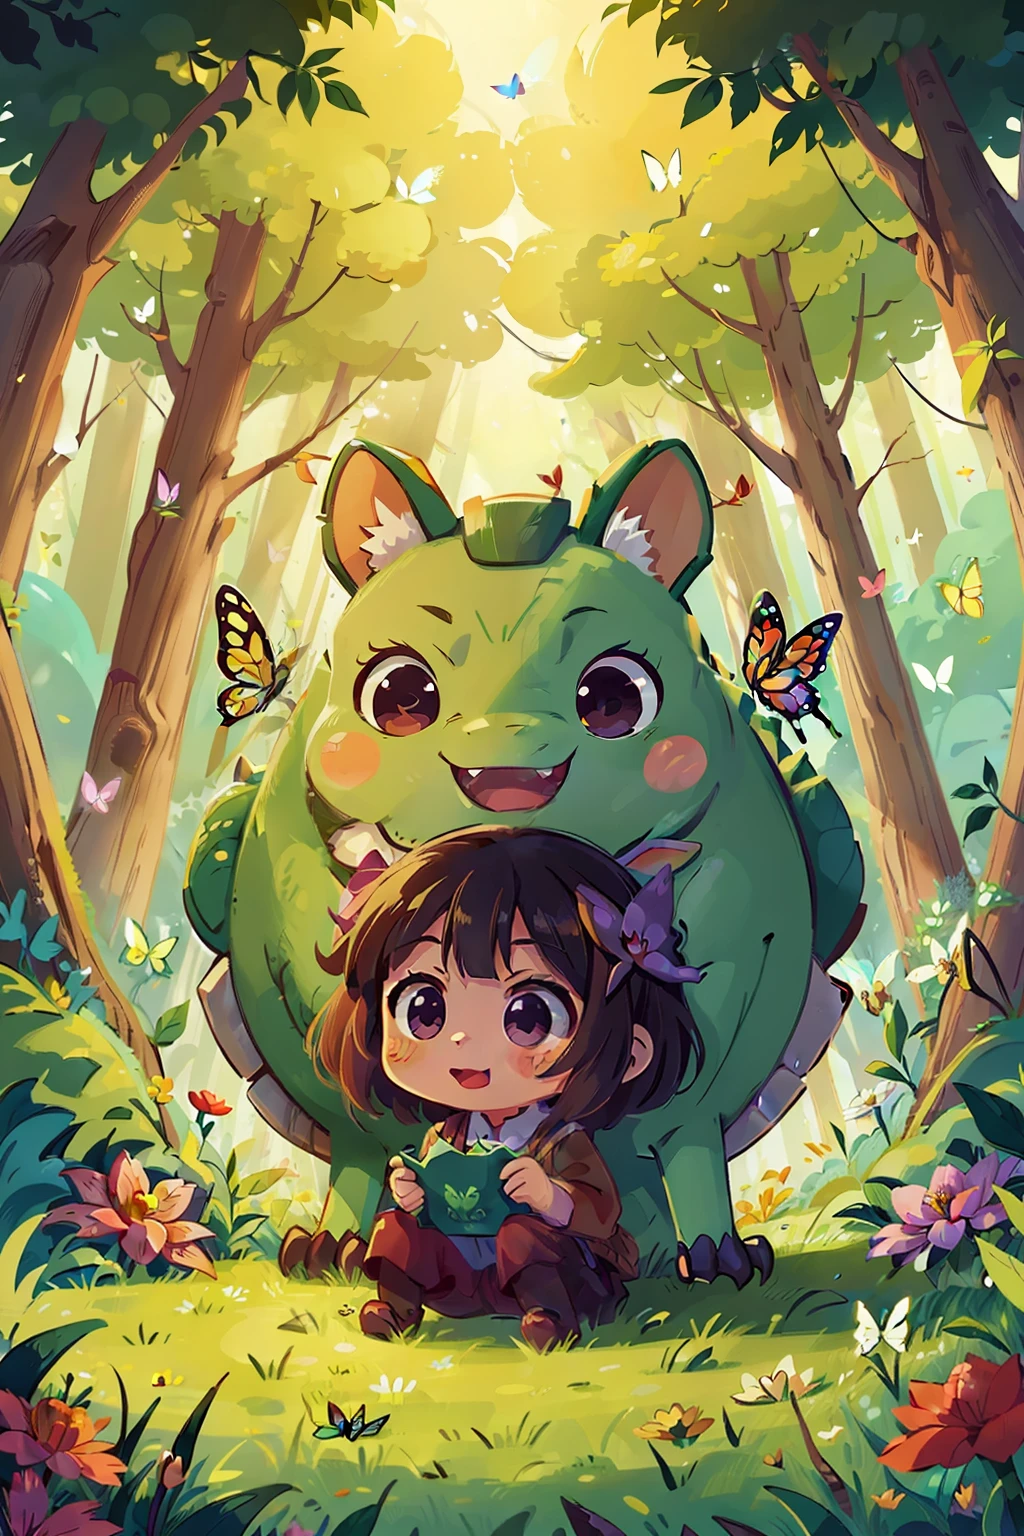  レイコ , 幸せ , アニメからのインスピレーション: 5 位,000歳の草食ドラゴンは不当に邪悪です, 森 , 花 , 蝶 フルカラー 喜び, ロマンチックな雰囲気, 暖かい光.